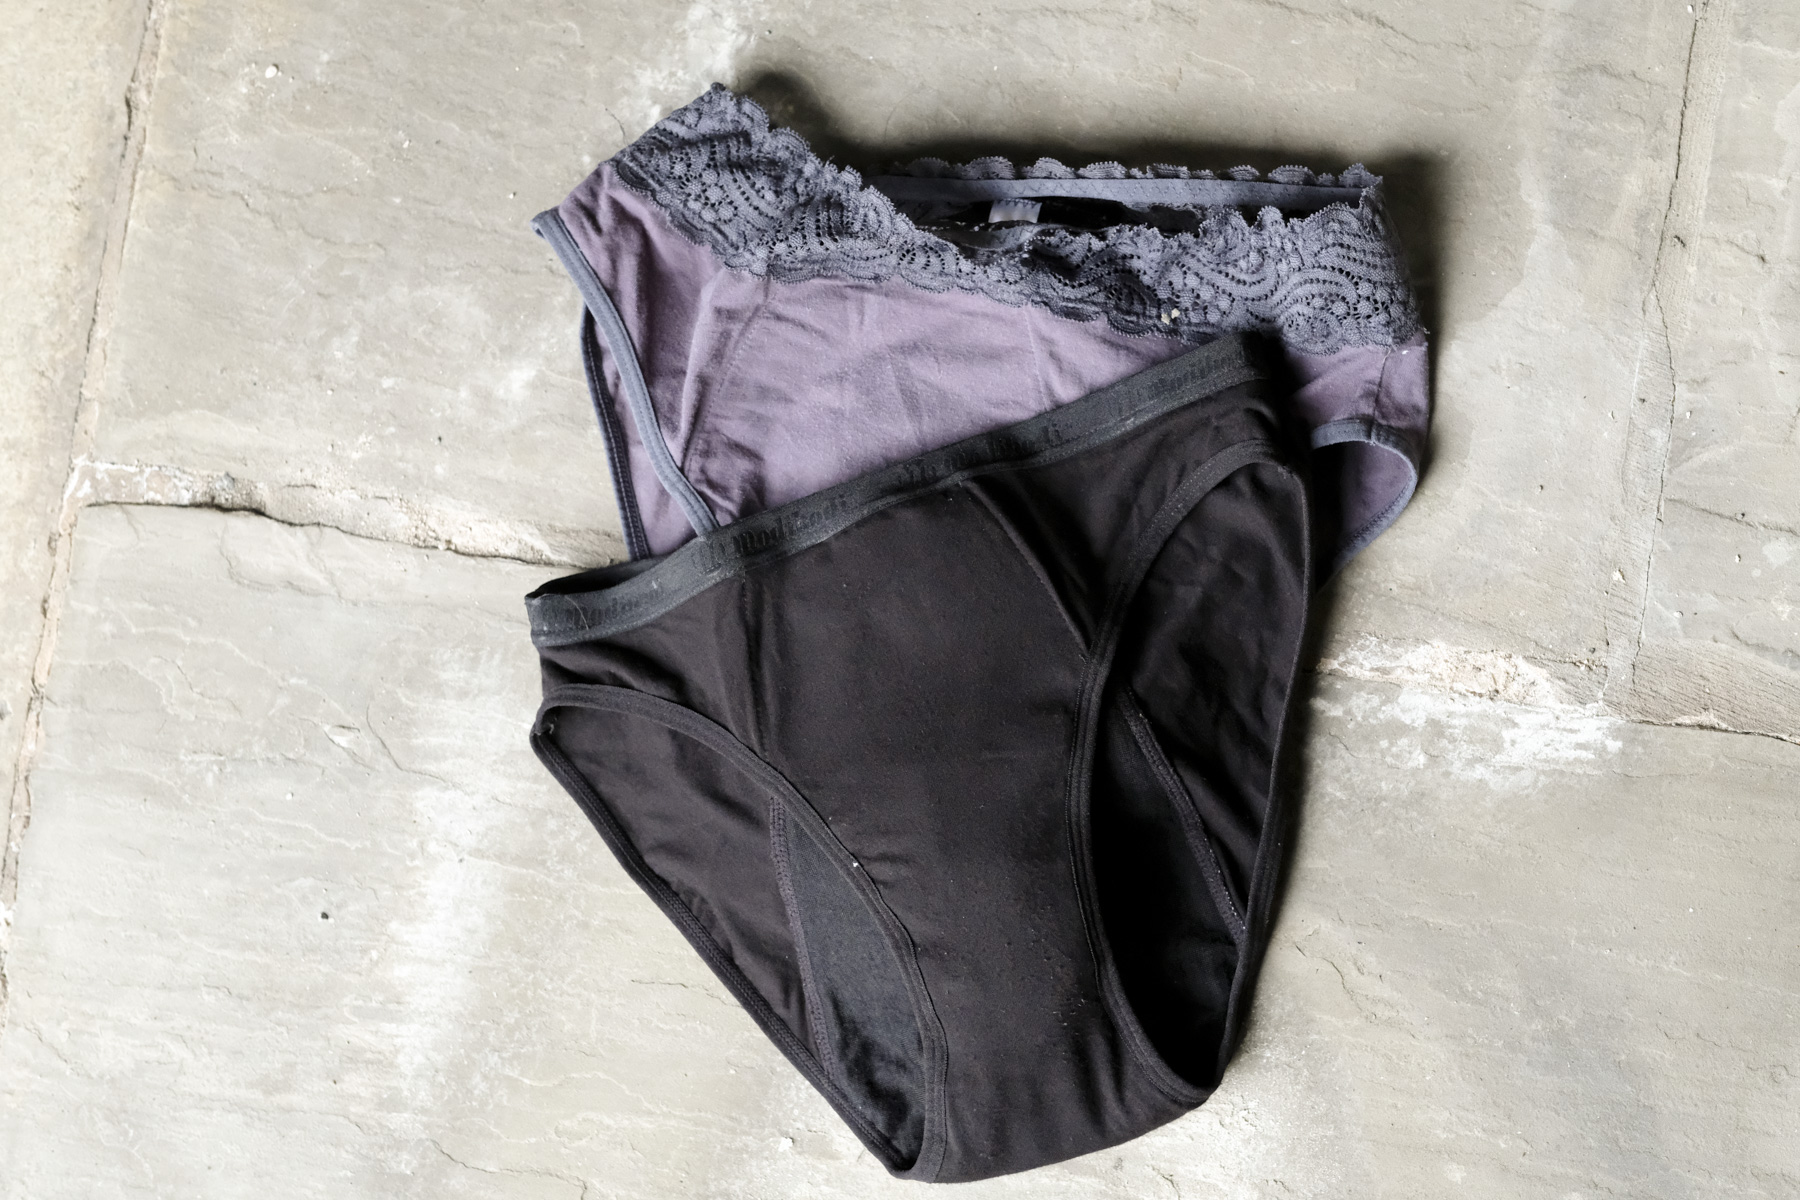 Modibodi Period Panties Underwear Classic Bikini MAXI-24Hrs Absorbency –  The Period Co.